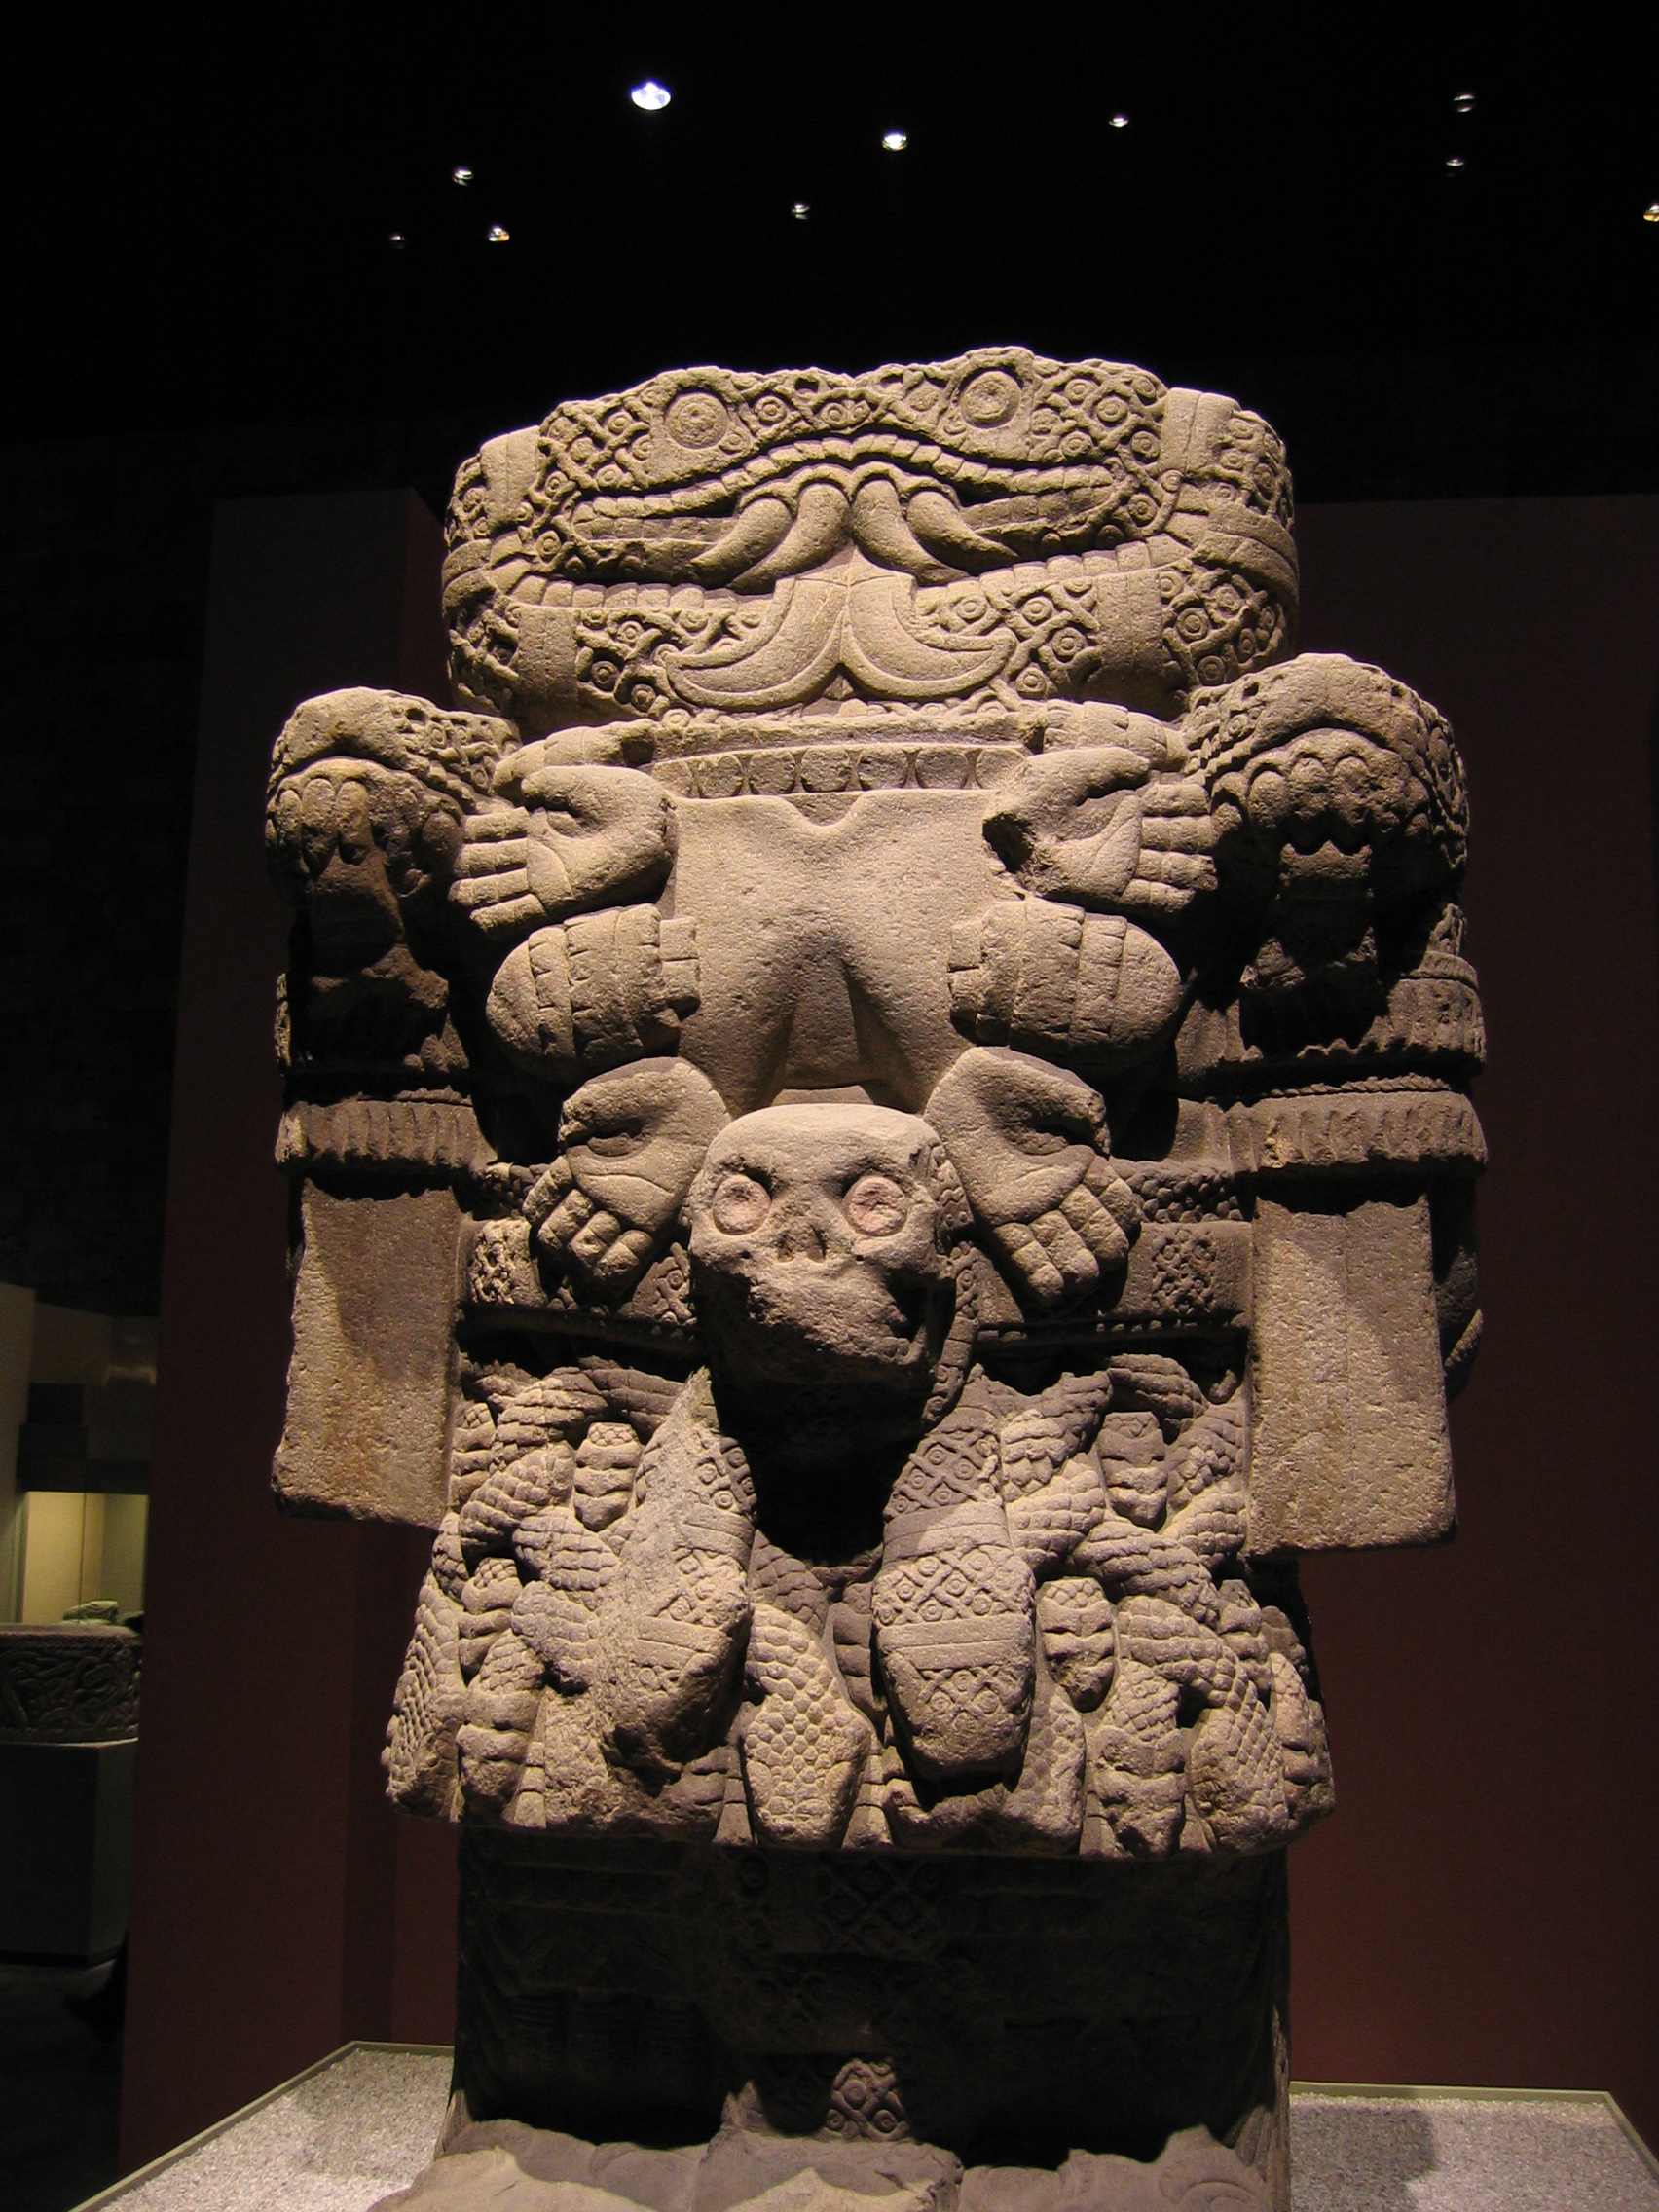 Coatlicue, basalt, ca. 1500 (Museo Nacional de Antropología, Mexico City). Photo by Xuan Che, CC BY 2.0.